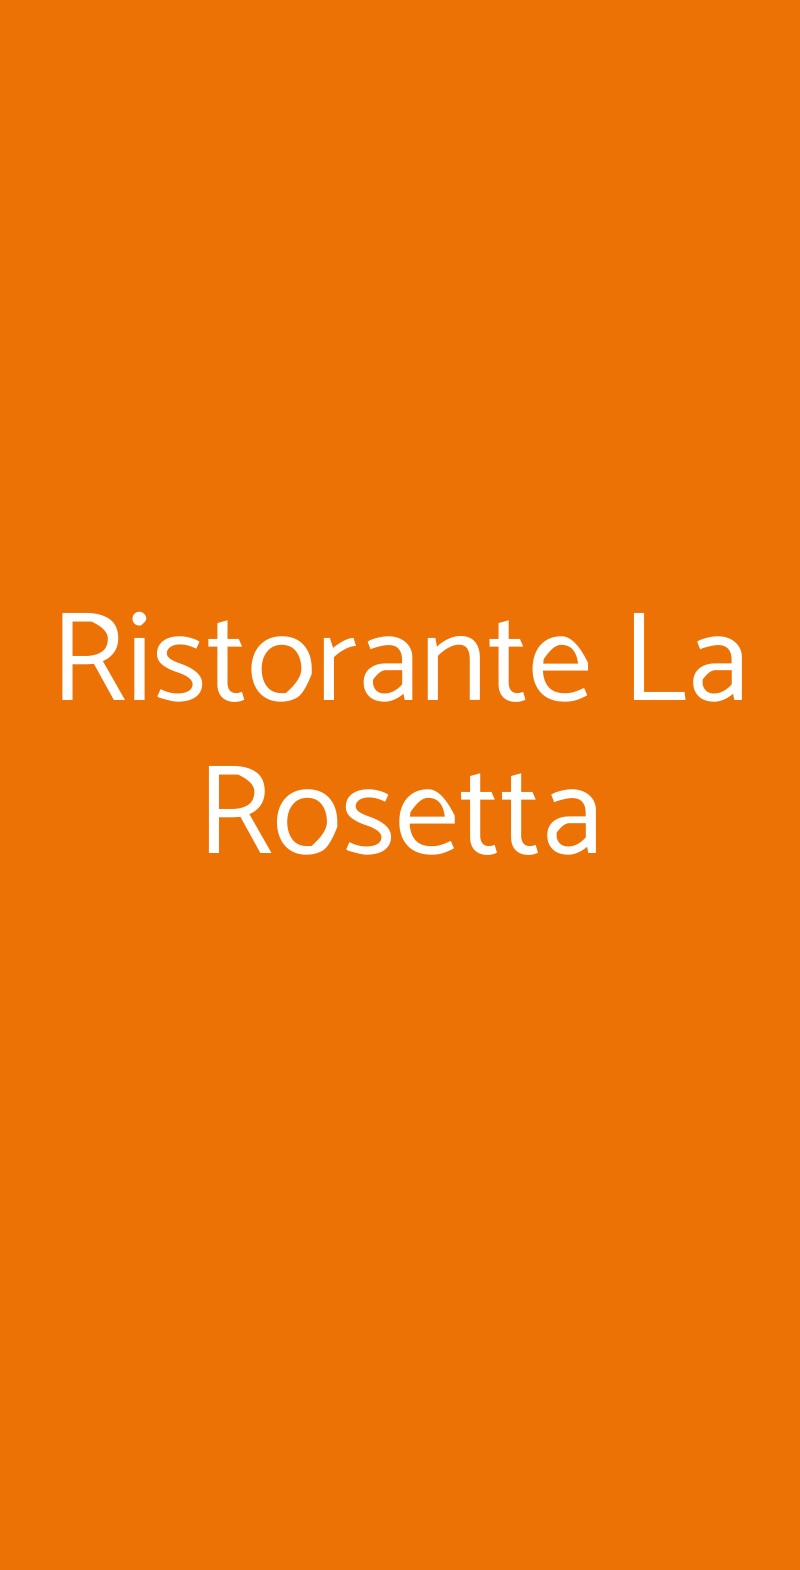 Ristorante La Rosetta Perugia menù 1 pagina